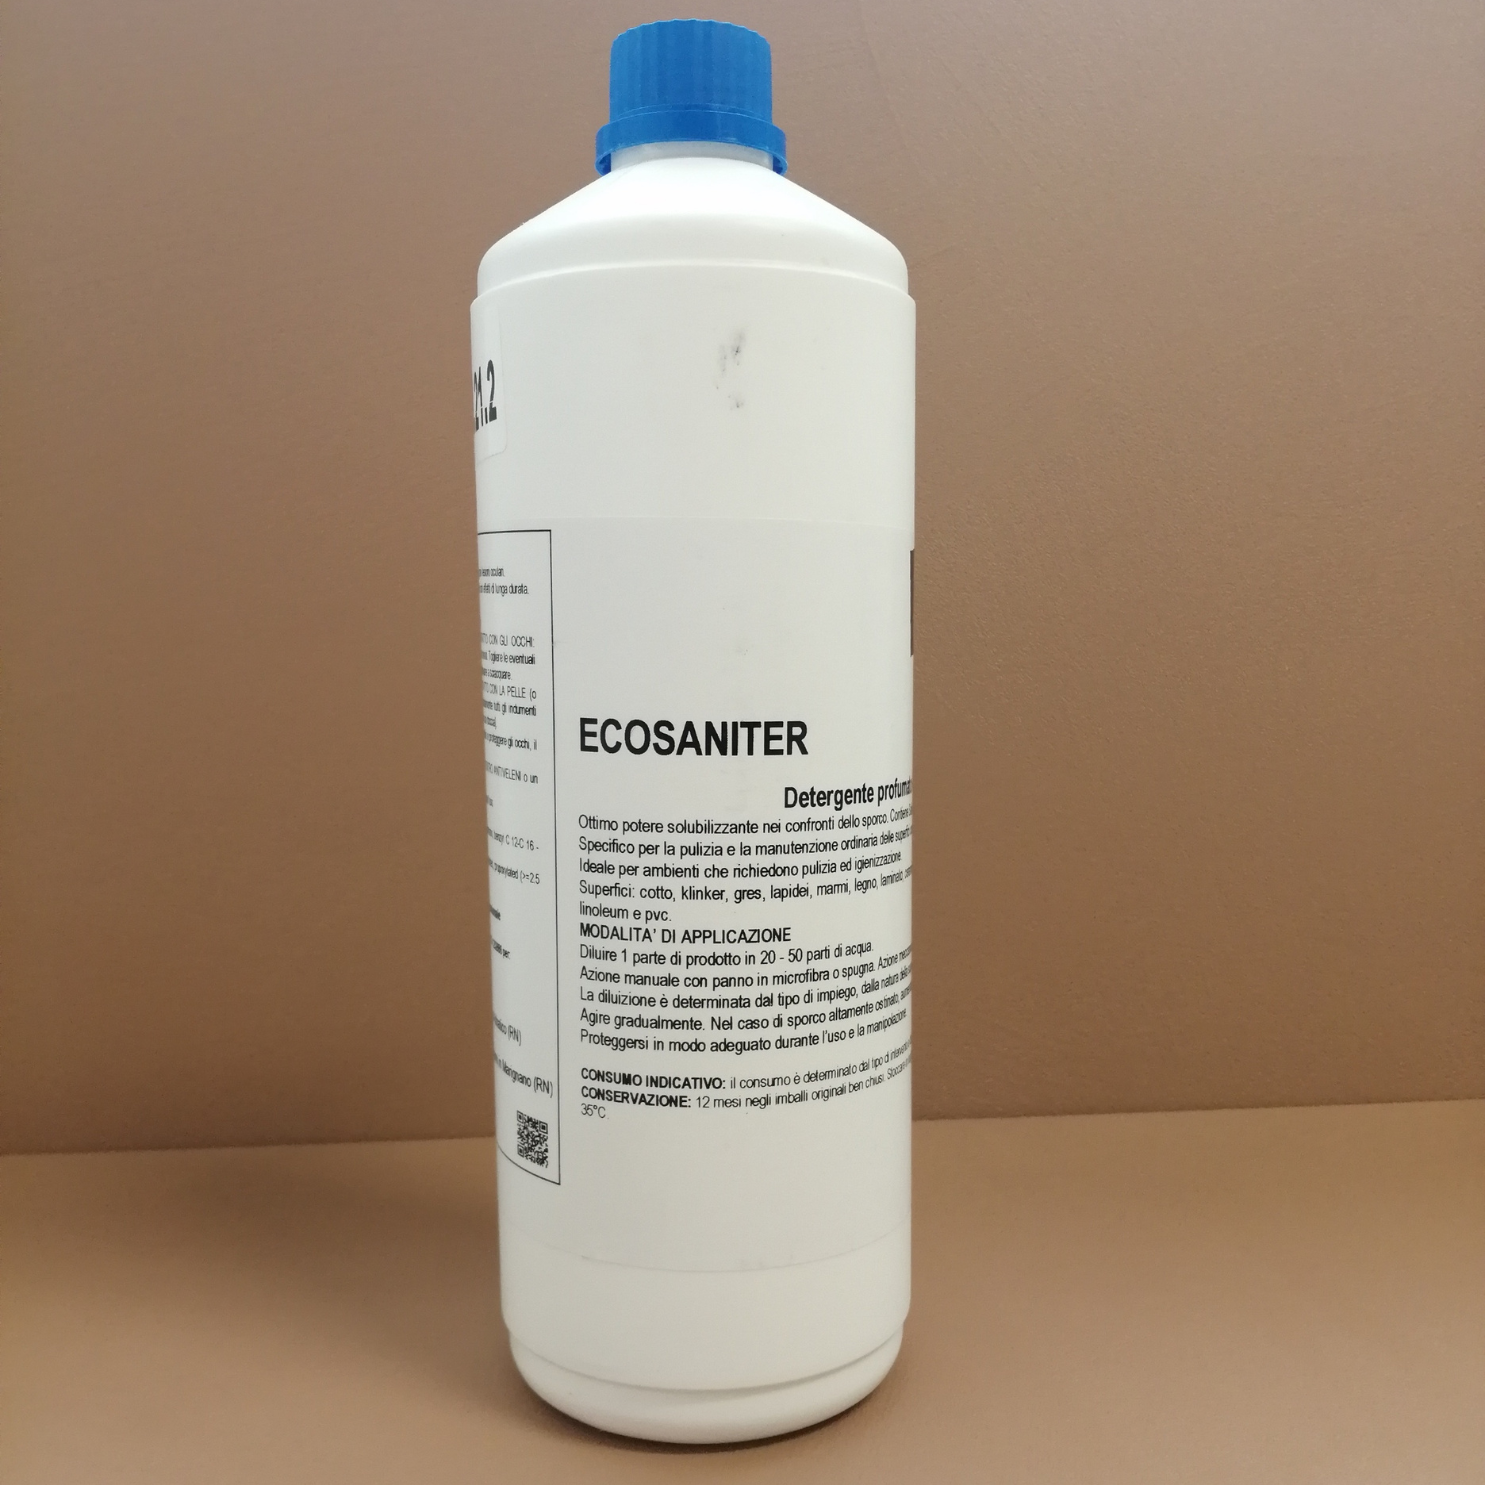 Ecosaniter - Detergente per la pulizia del calcare